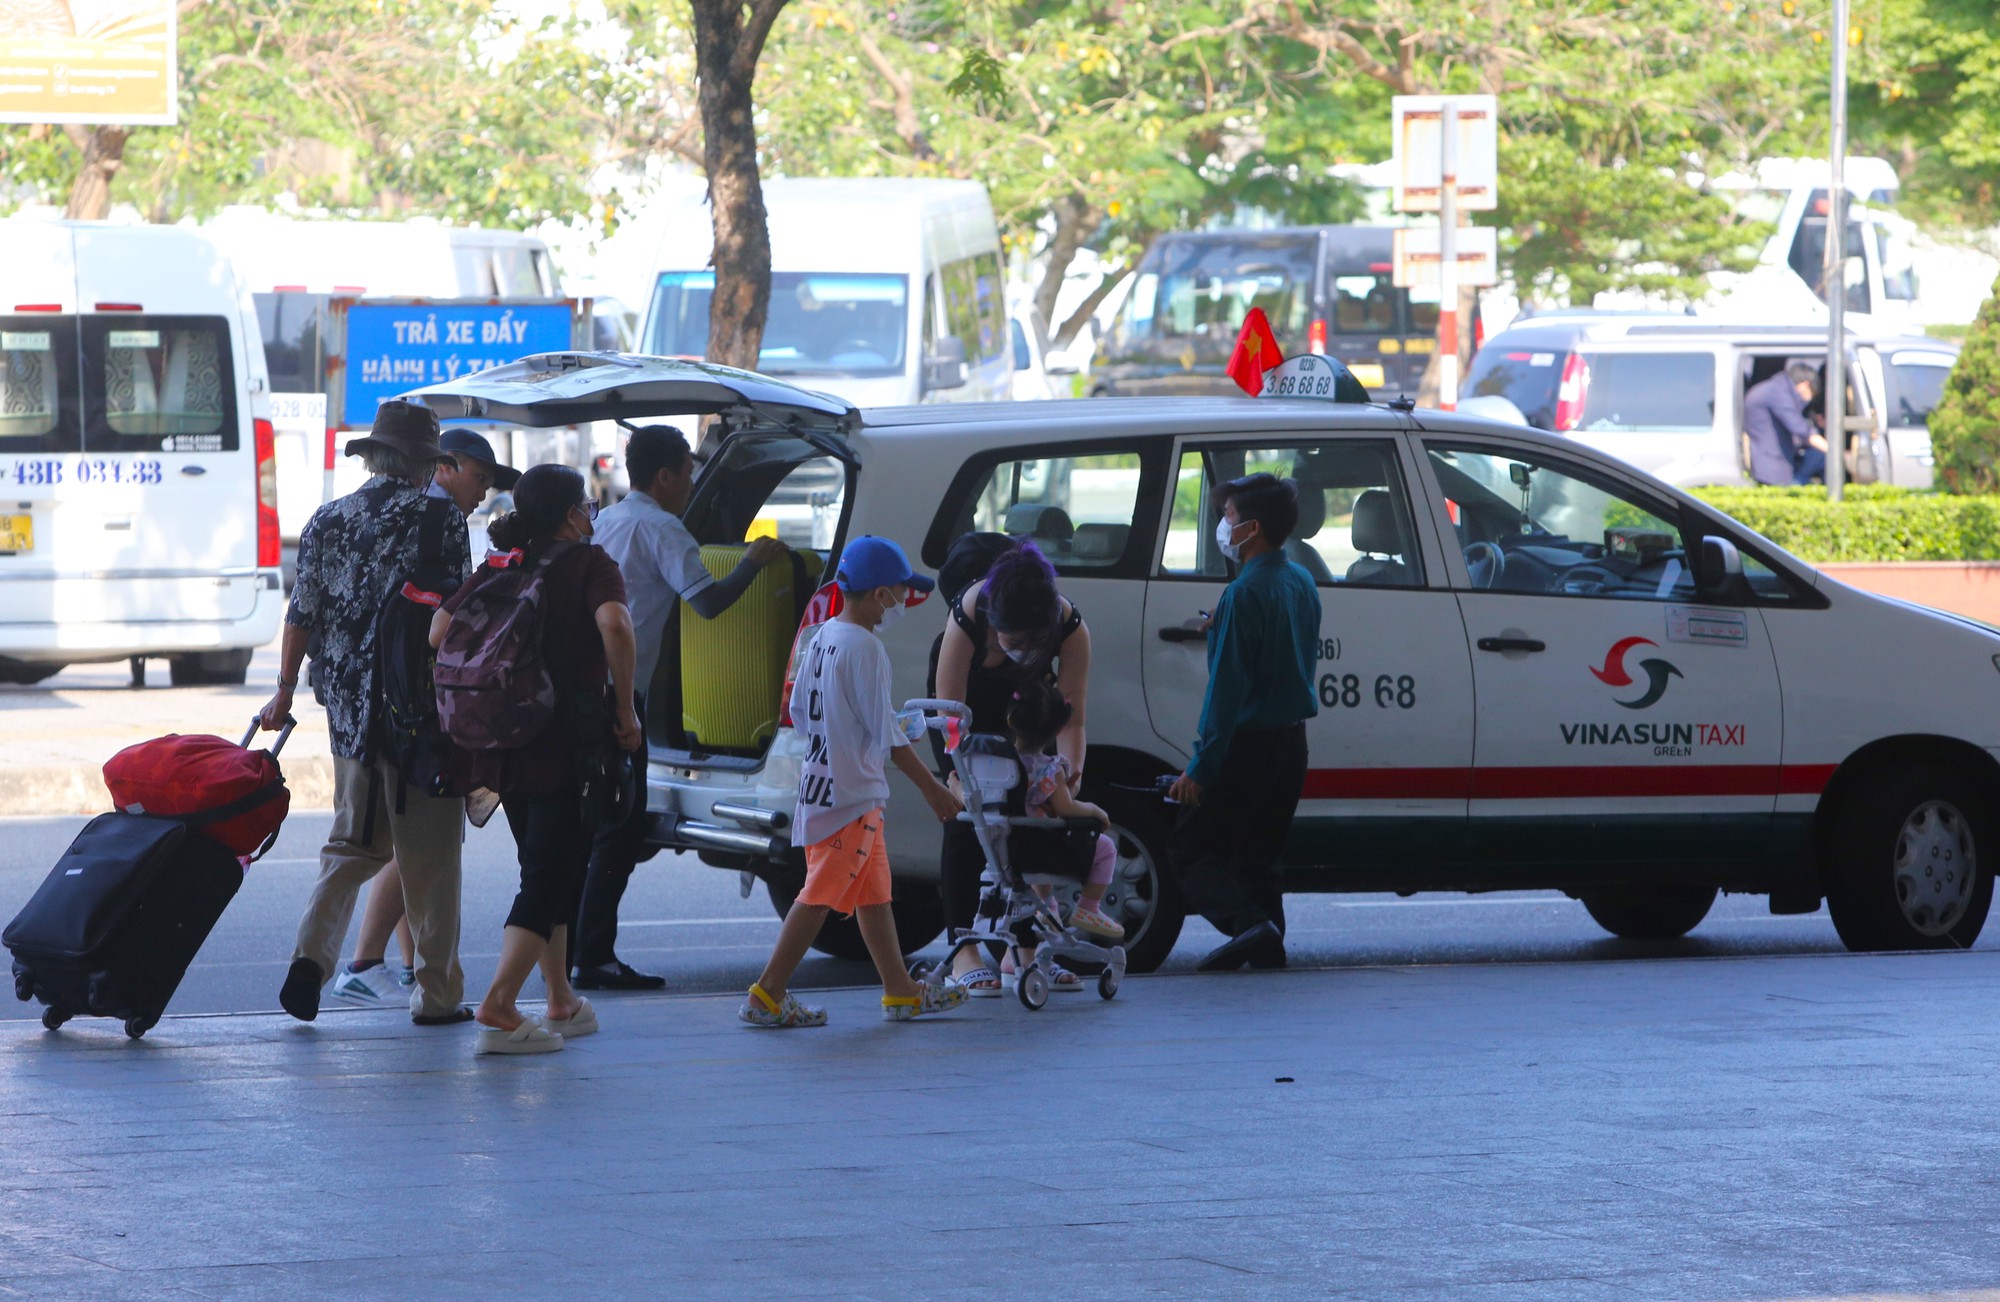 Sân bay Đà Nẵng chật kín du khách ngày đầu nghỉ lễ, tài xế taxi &quot;vui như Tết&quot; - Ảnh 15.